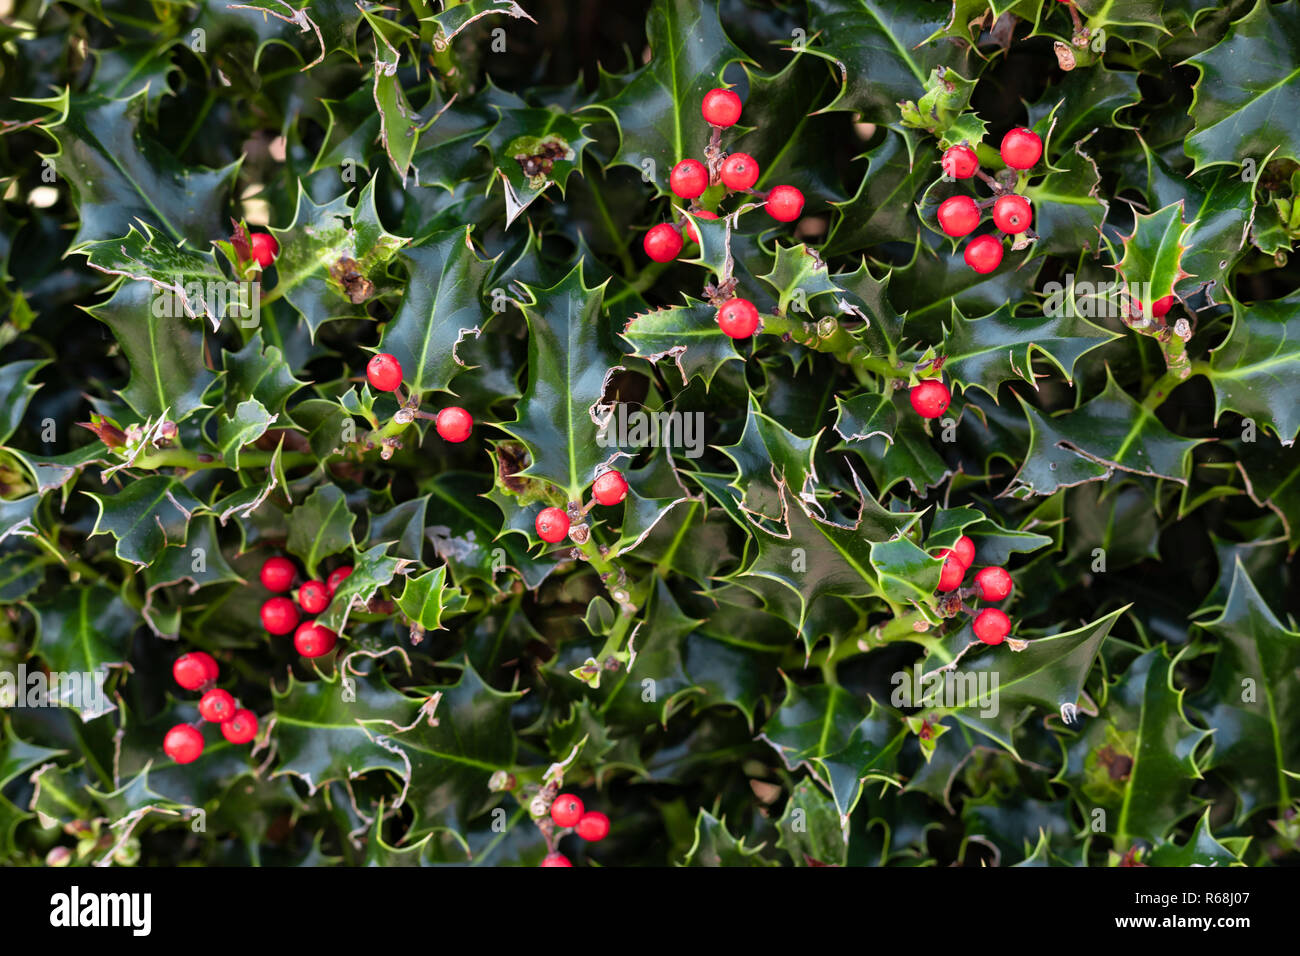 Nahaufnahme von einem Stacheligen holly grüne Pflanze mit roten Beeren,  perfekt für die Verwendung als Weihnachten (Xmas) Hintergrund  Stockfotografie - Alamy